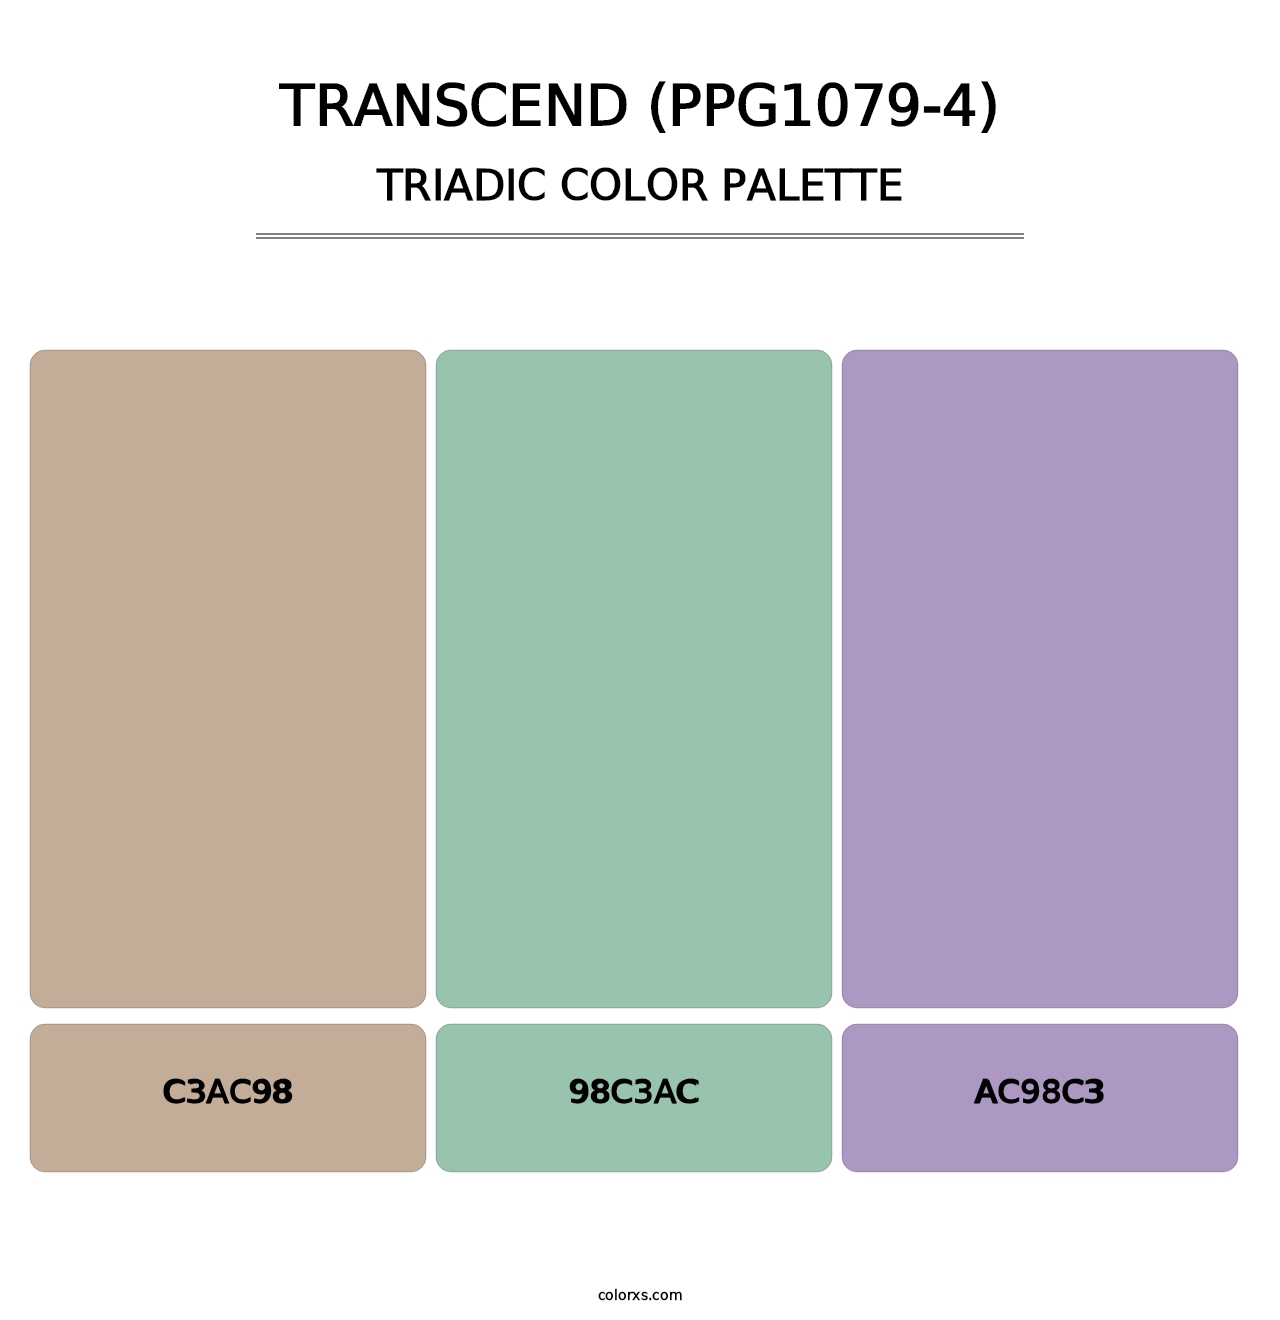 Transcend (PPG1079-4) - Triadic Color Palette